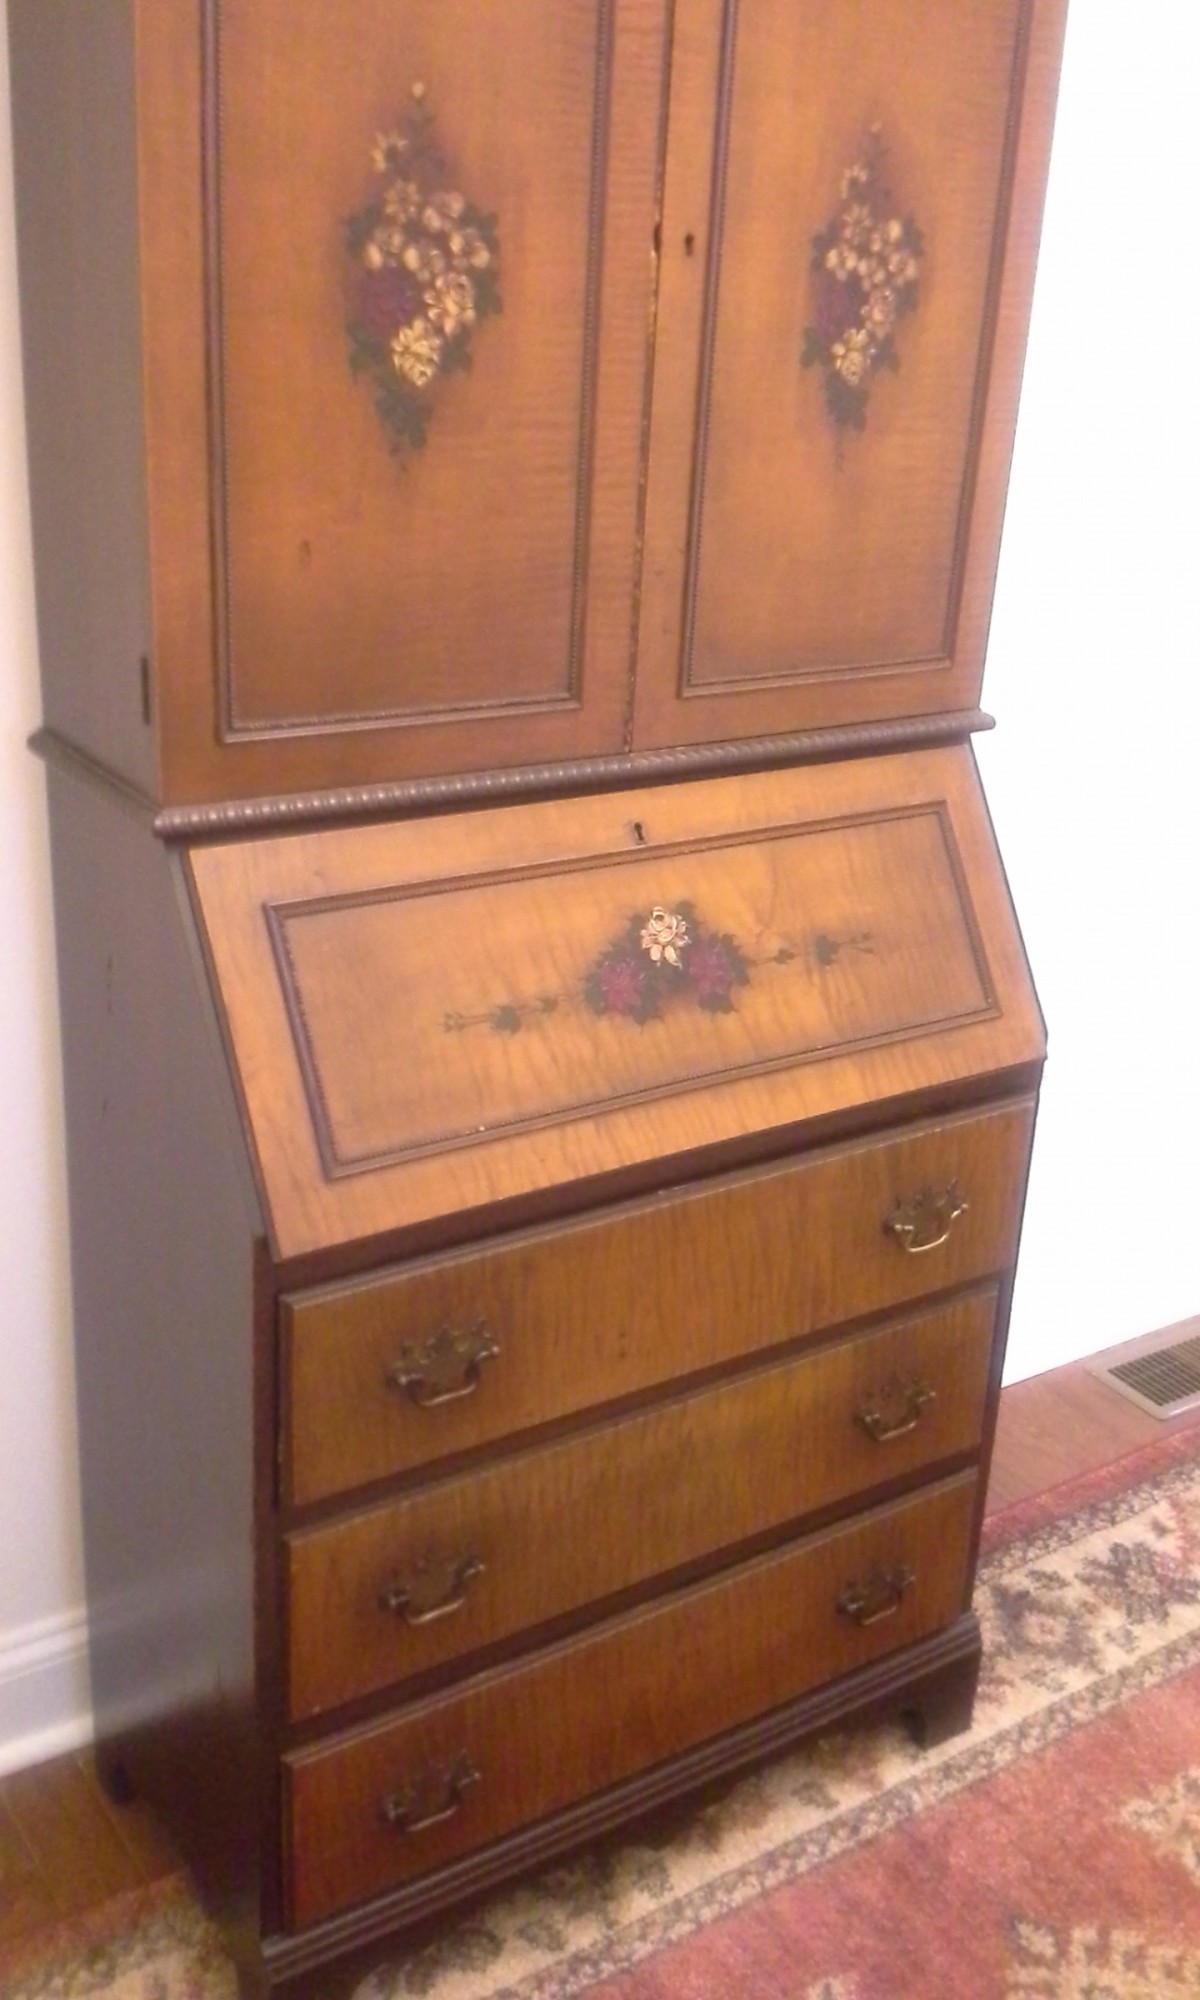 Identifying An Antique Desk Thriftyfun identifying an antique desk thriftyfun